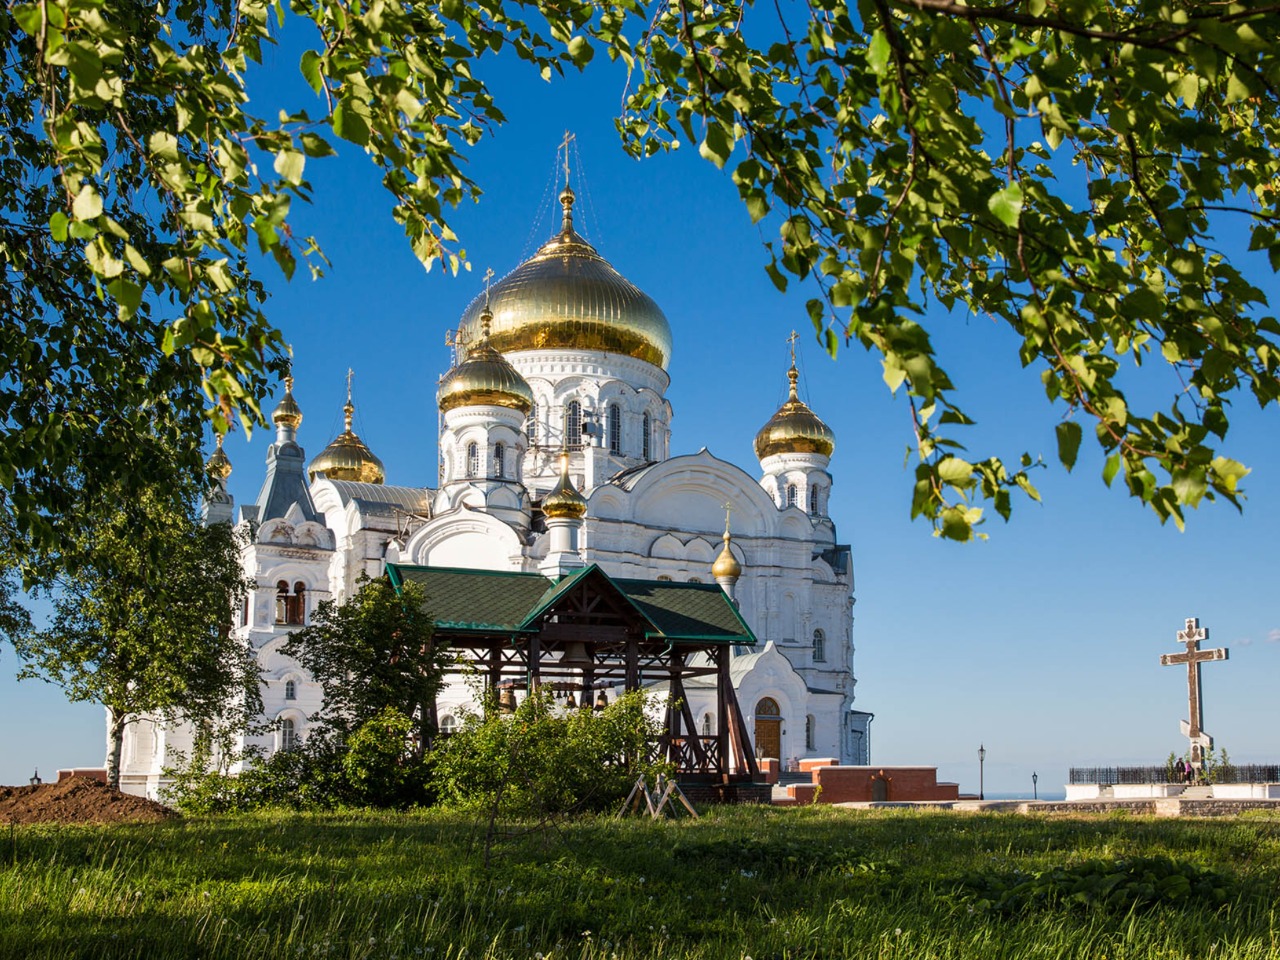 Свято-Николаевский Белогорский мужской монастырь | Цена 13750₽, отзывы, описание экскурсии